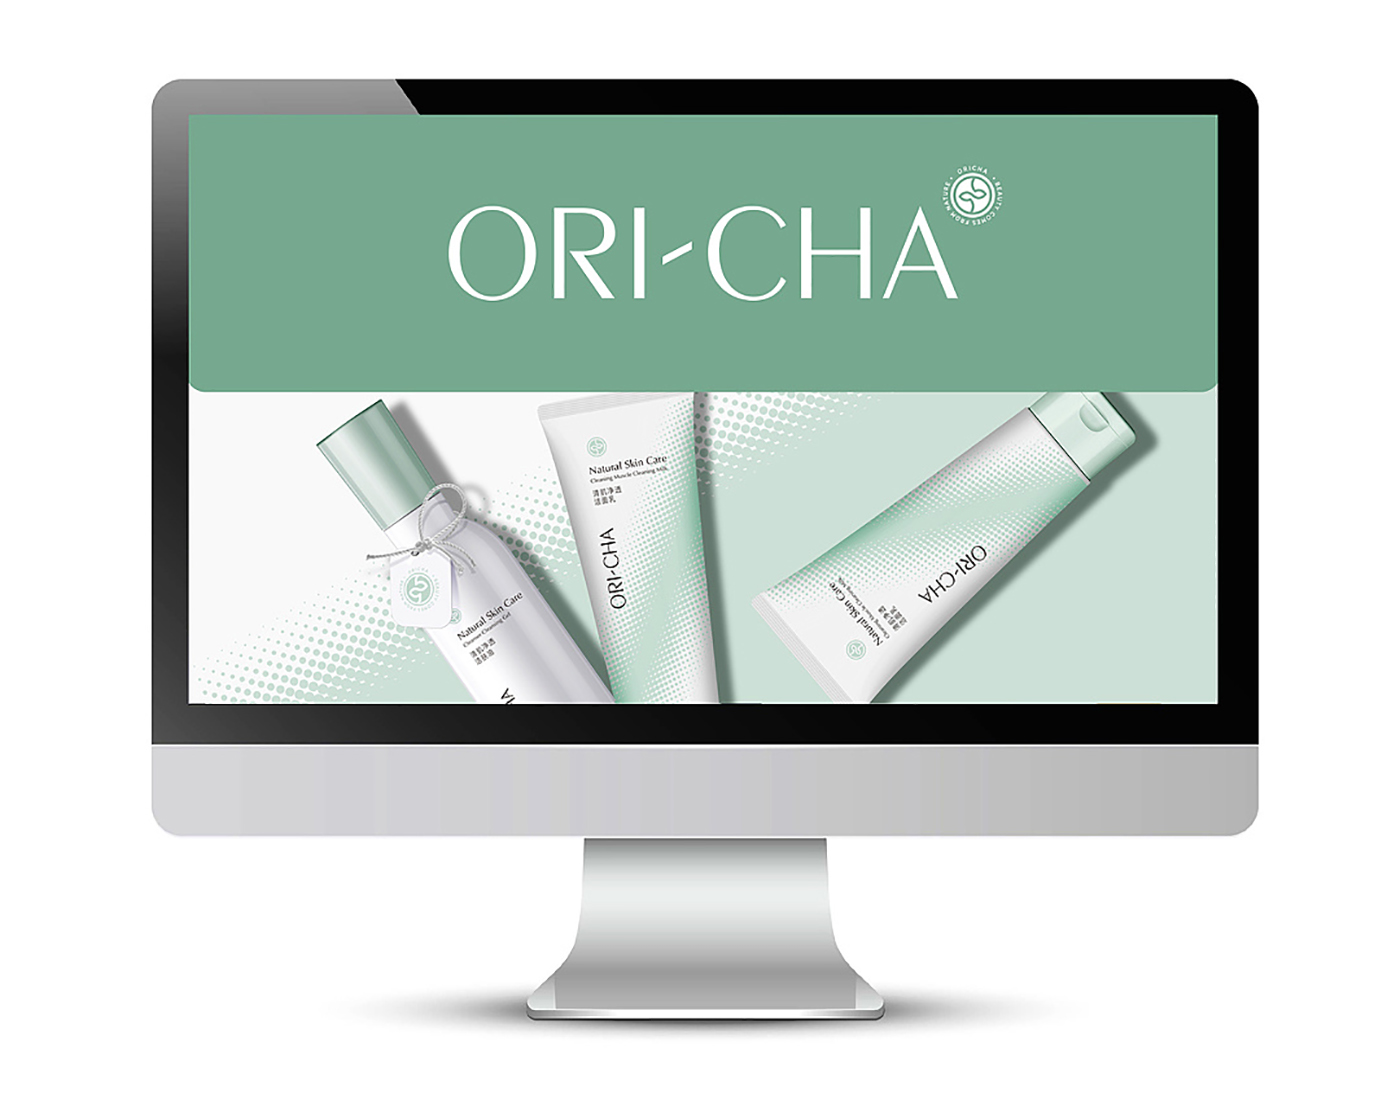 ORI-CHA自然護膚專家包裝設計